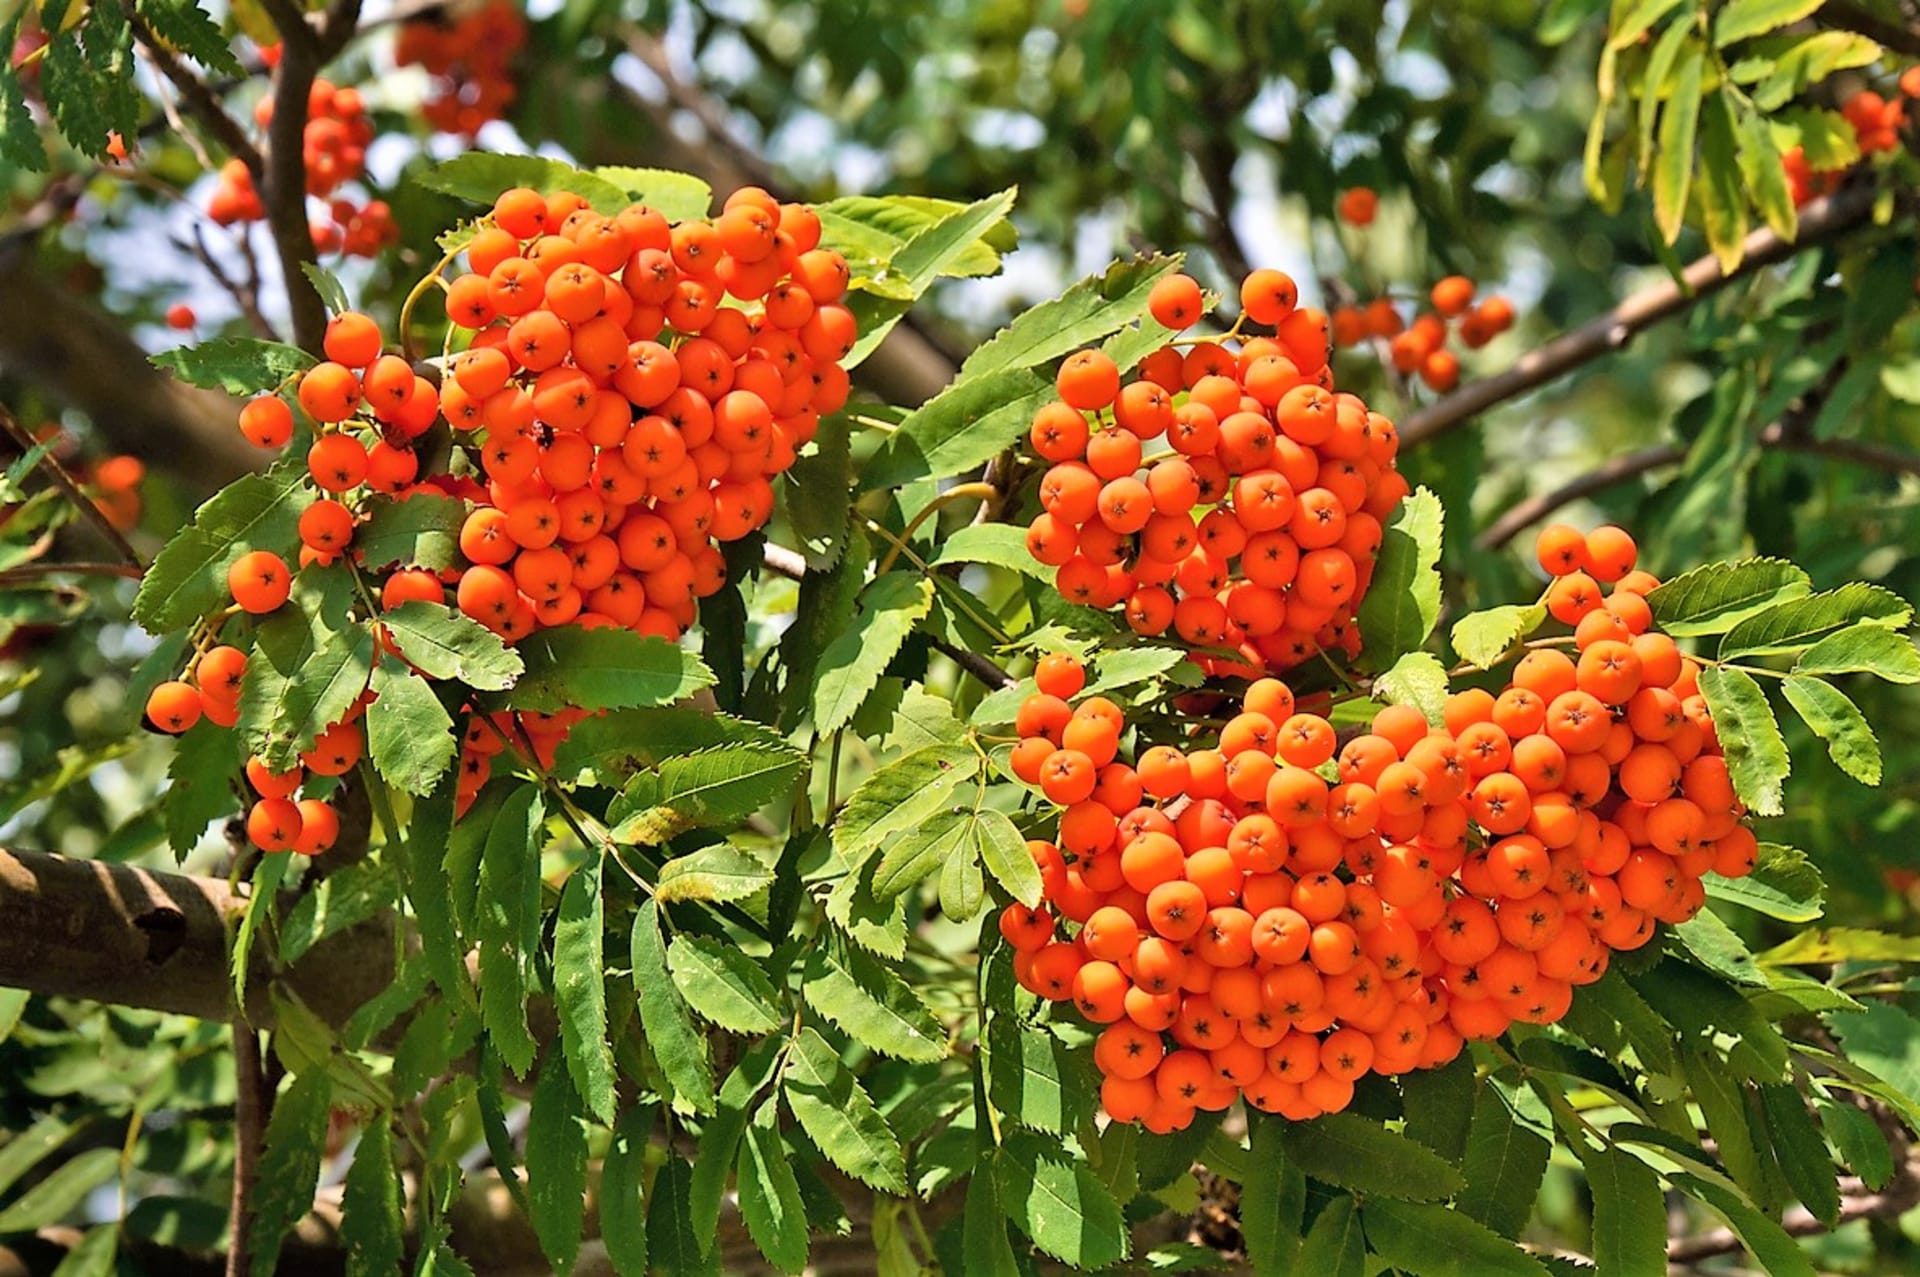   Rowanberry, rdeče-oranžni plodovi navadne jerebike (Sorbus aucuparia), imajo prijeten vonj po jabolkih in hruškah, njihov okus pa je grenak in grenak.